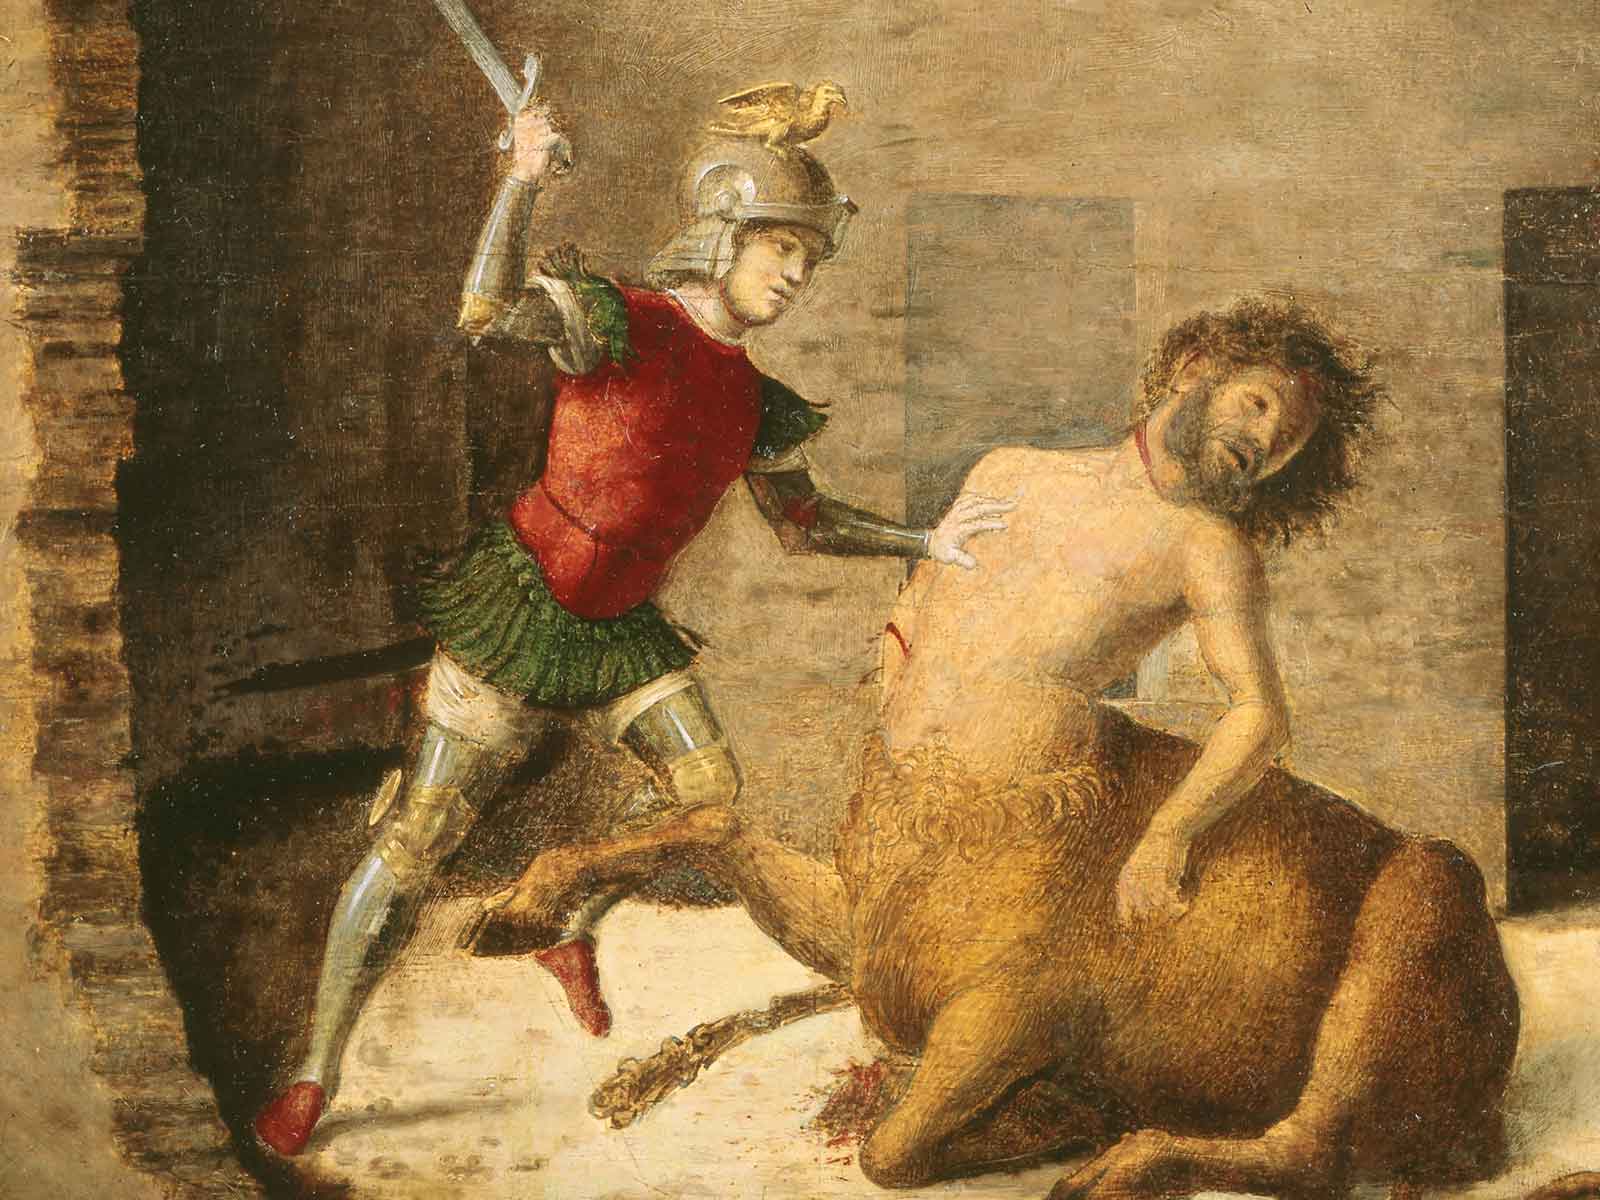 Dettaglio del dipinto Teseo uccide il Minotauro di Cima da Conegliano che raffigura una figura maschile in armatura che sta colpendo un minotauro.